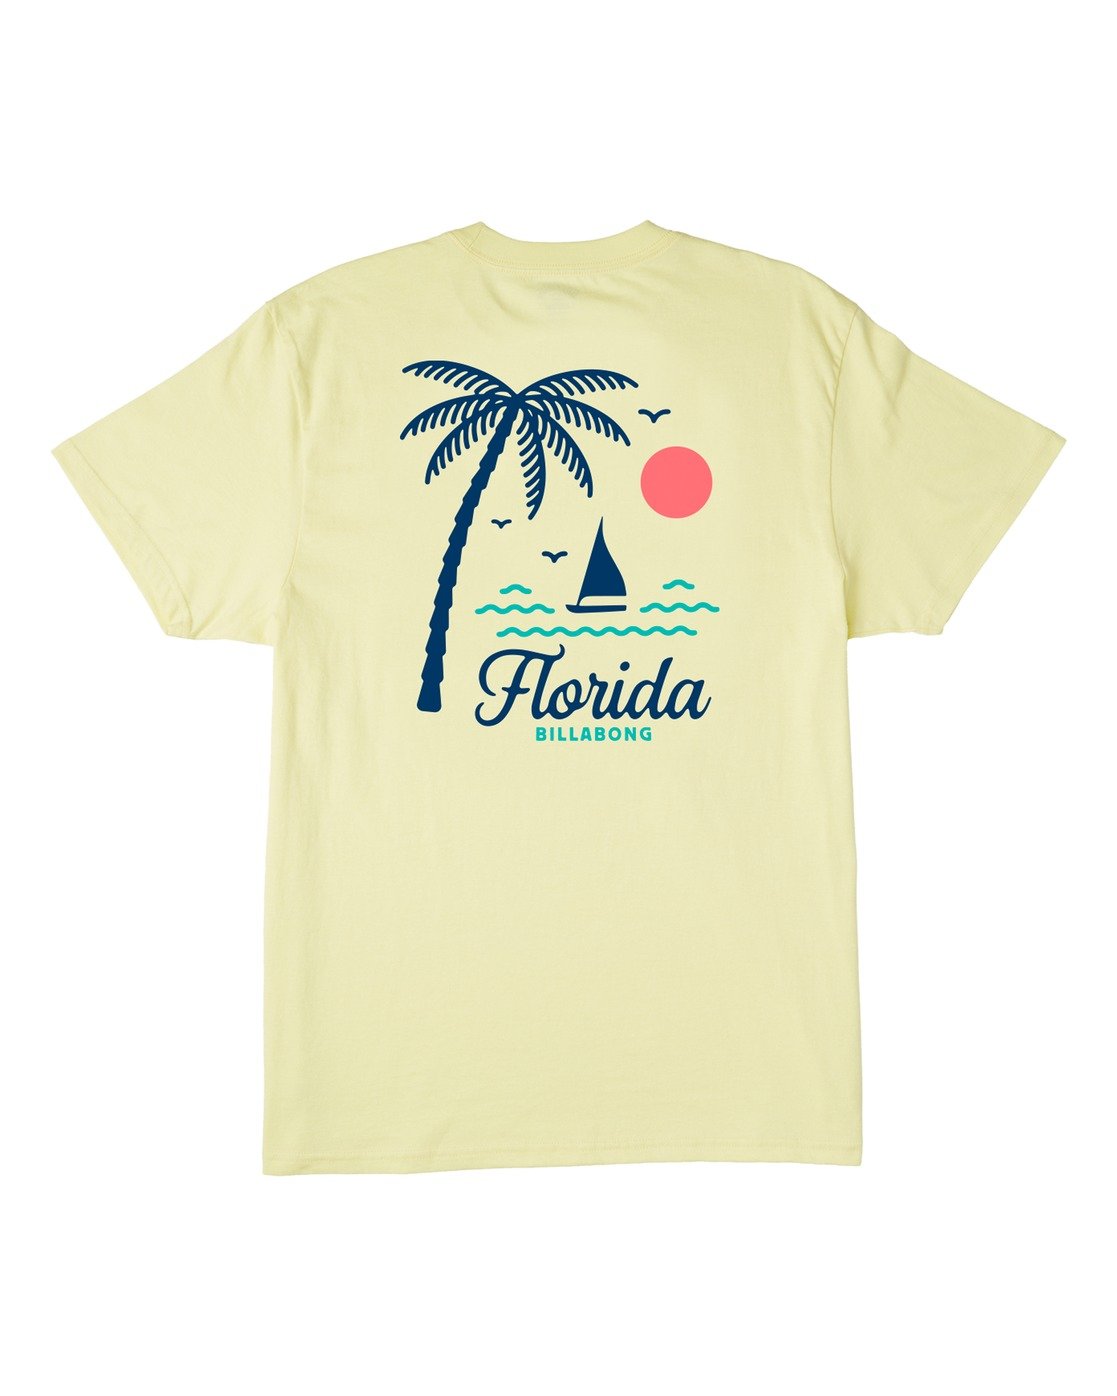 Billabong Daysailor Florida Short Sleeve T-Shirt BWX XL